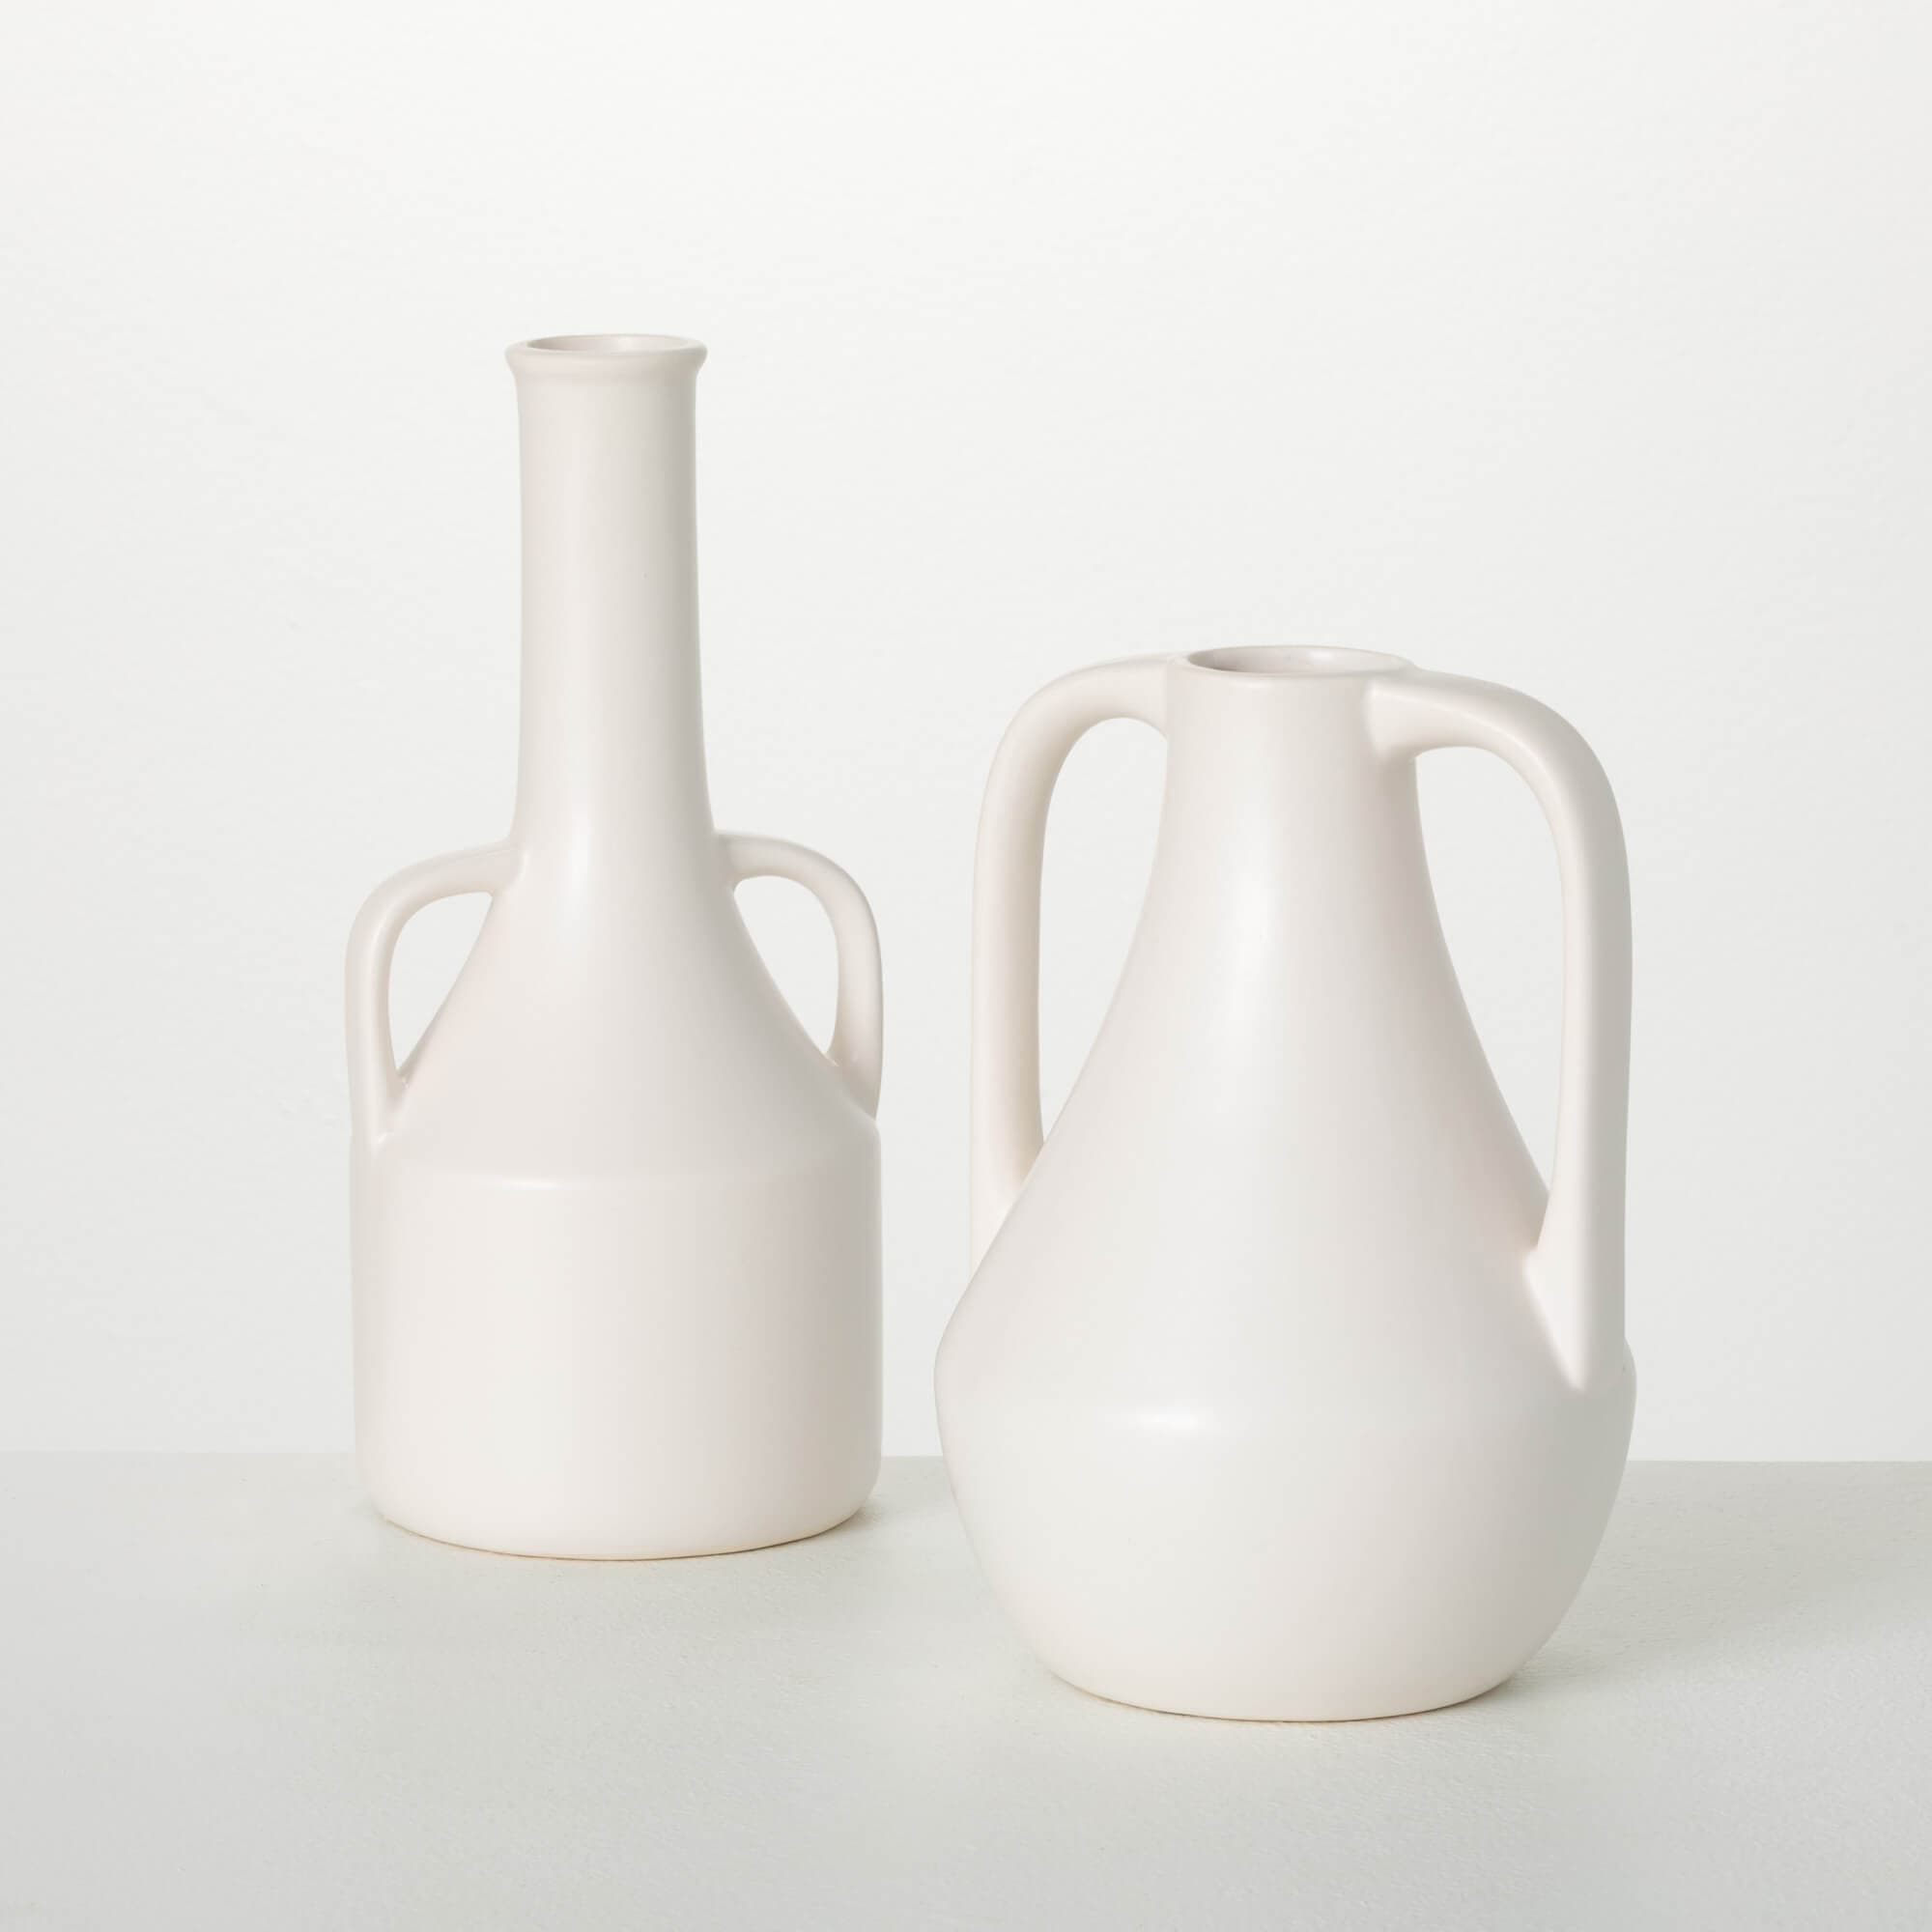 Modern Jug White Vases Elevate Home Decor - Vases